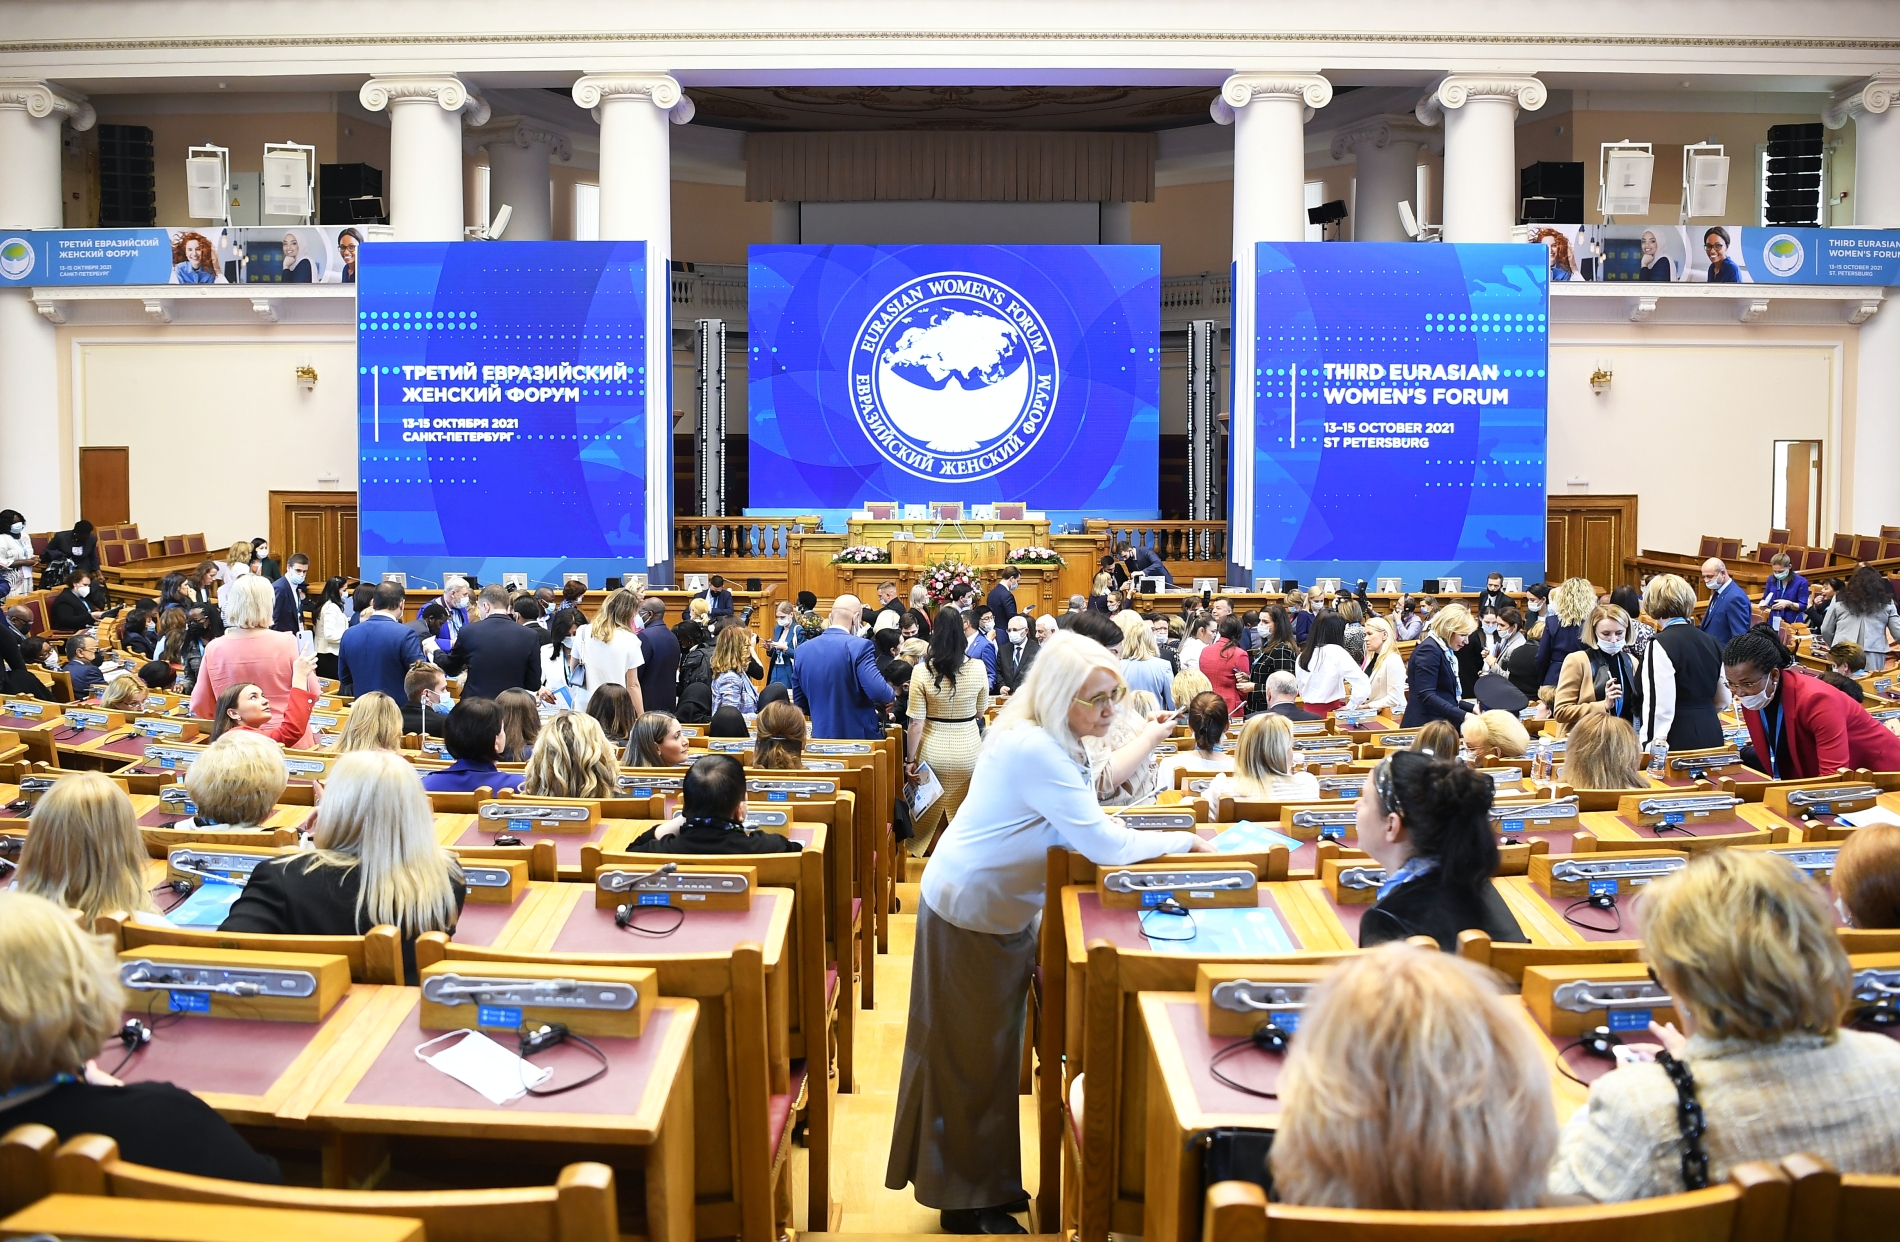 Spb forum. Евразийский женский форум. Экономический форум СПБ 2023. Евразийский женский форум 2023. III Евразийский конгресс 2023.